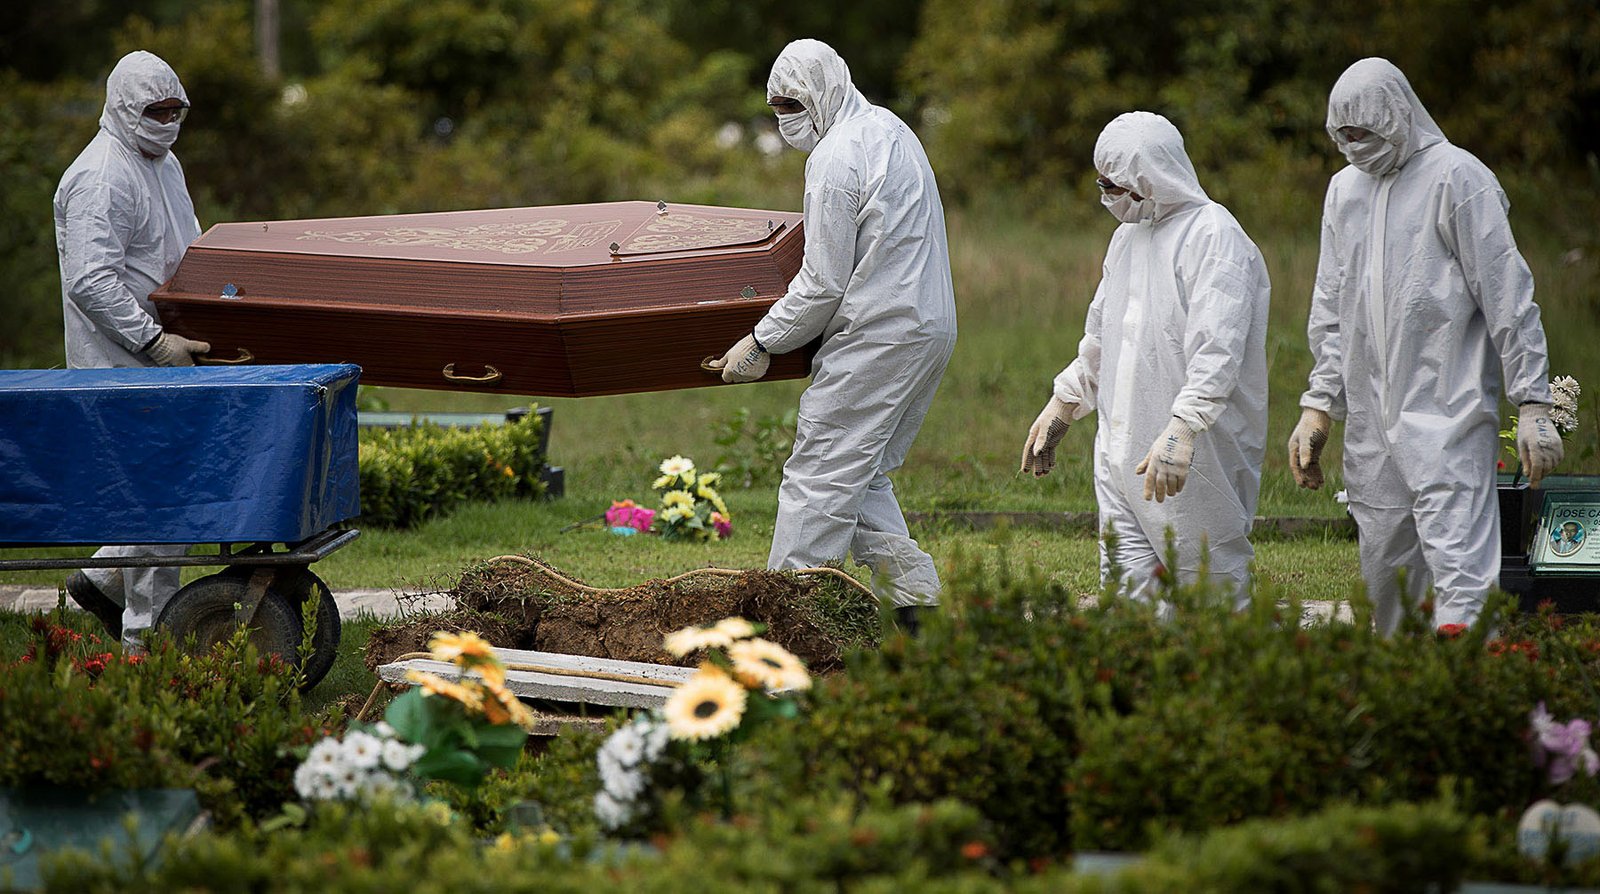 Pandemia: TERCEIRA ONDA DE COVID-19 DEVE ACELERAR MORTES NAS PRÓXIMAS SEMANAS, ALERTAM ESPECIALISTAS